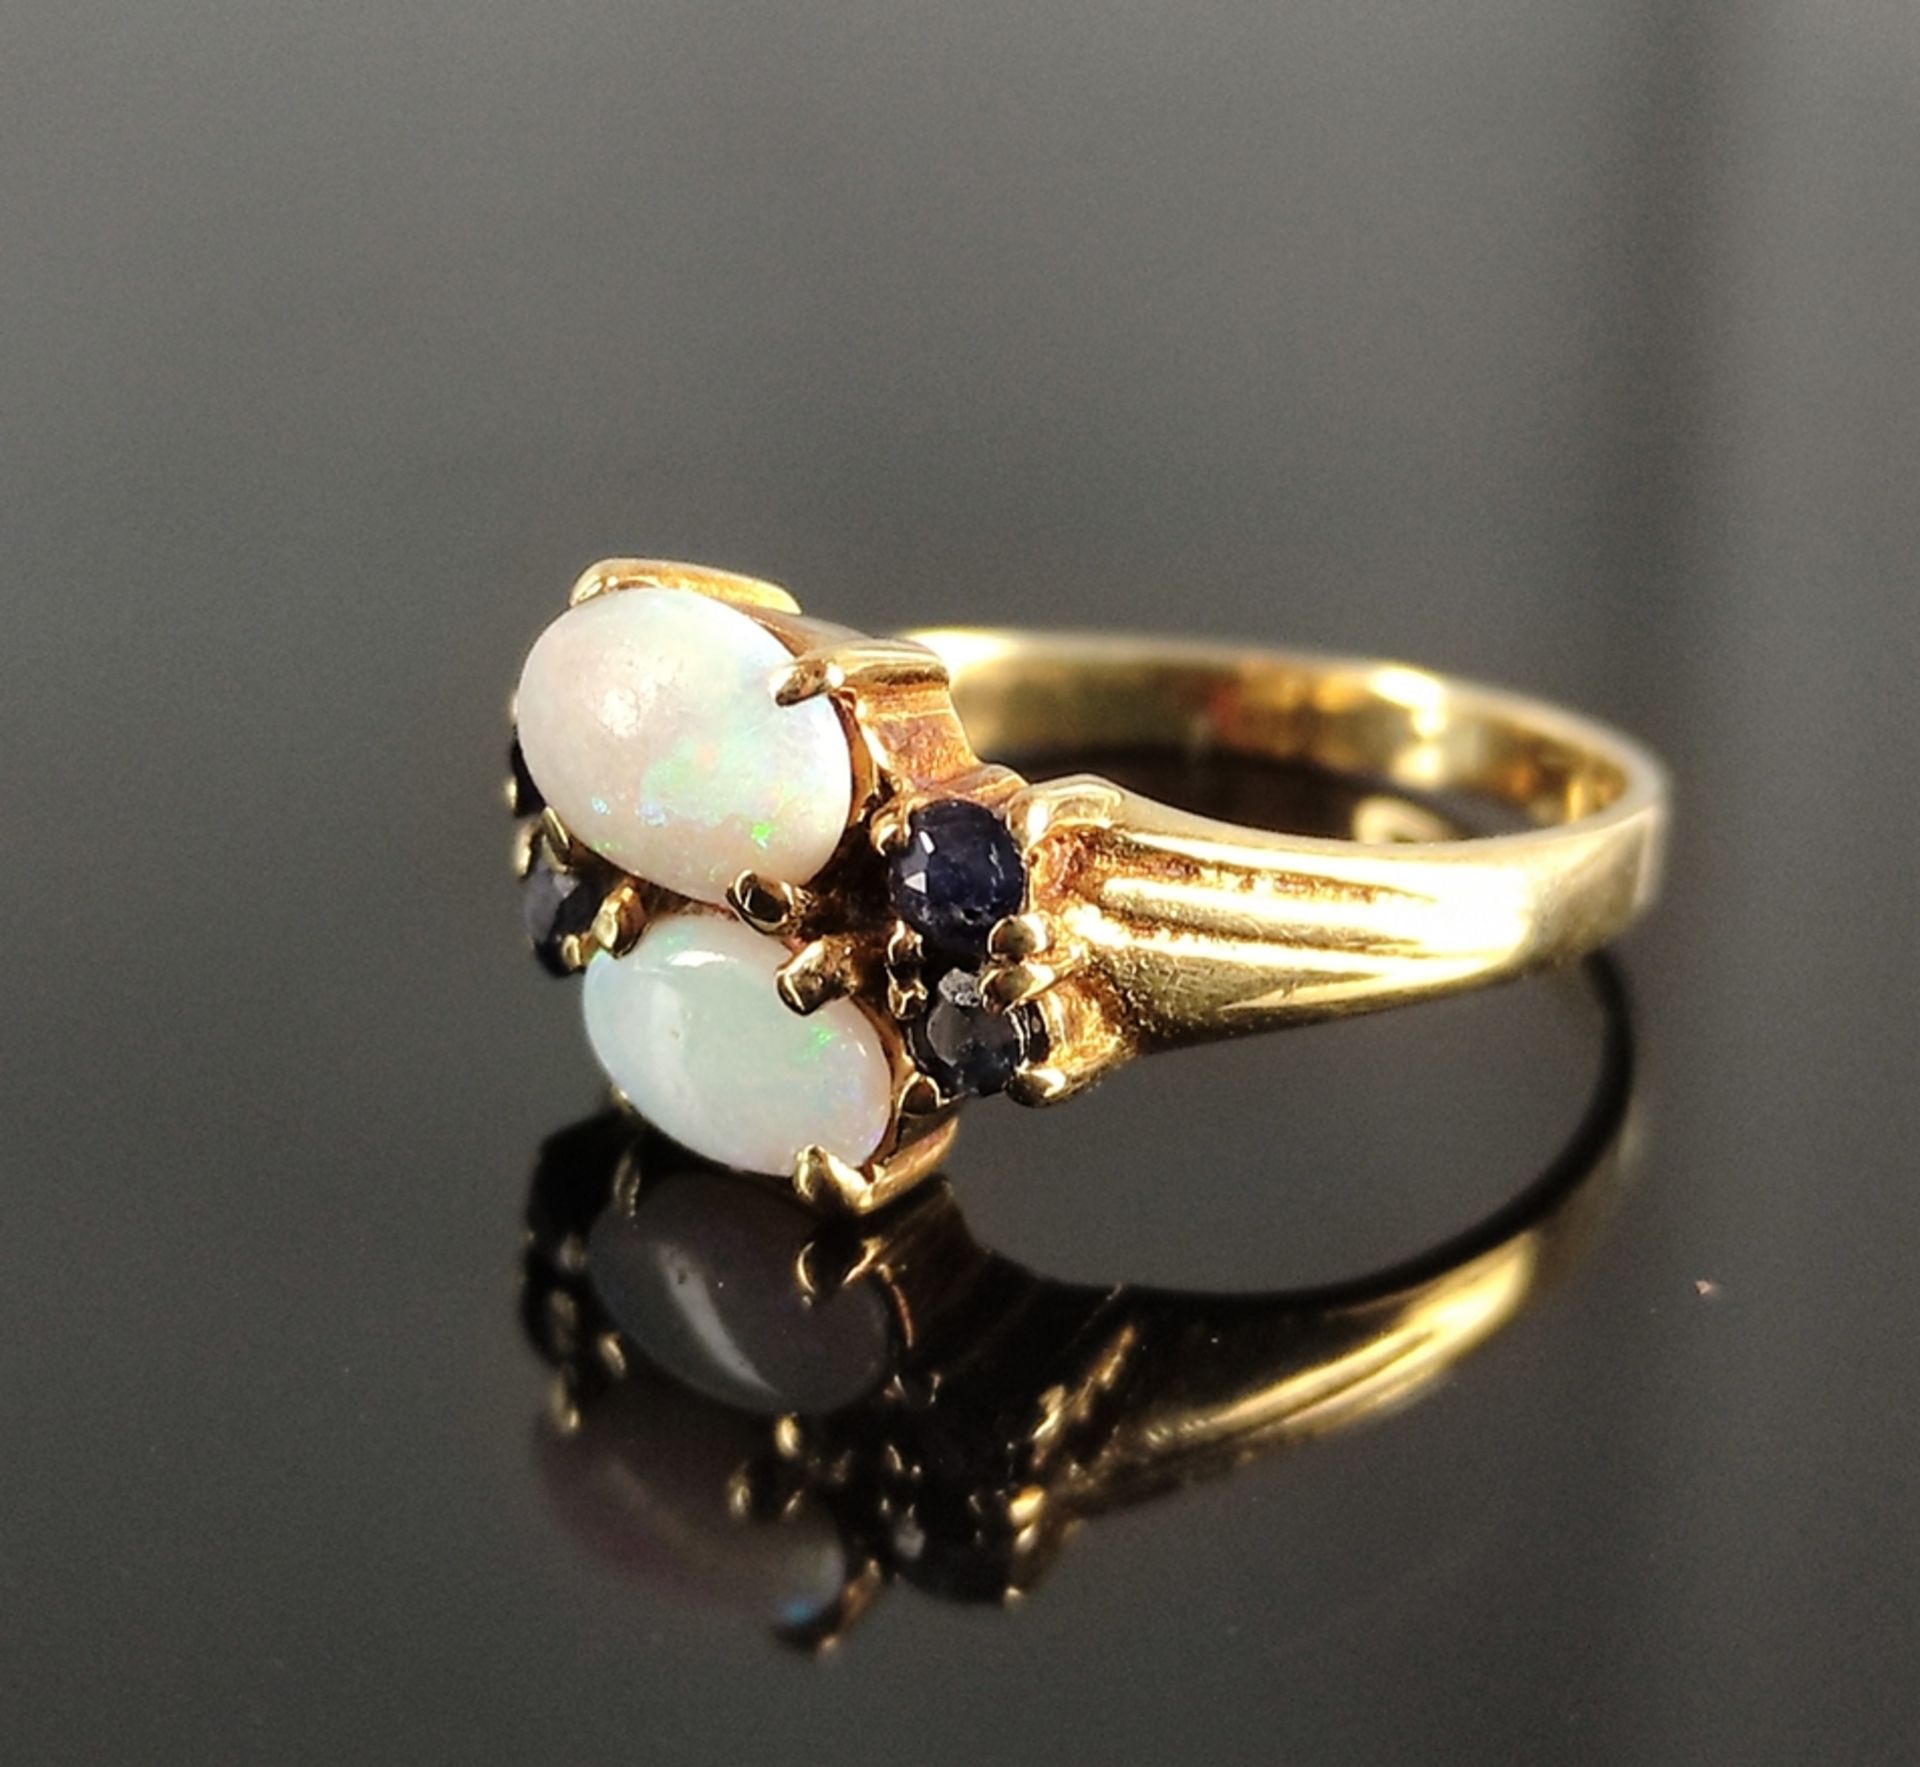 Opal-Ring, mit zwei Opal-Cabochons, darum 4 kleine Saphire, 585/14K Gelbgold, 2,7g, Ringgröße 50